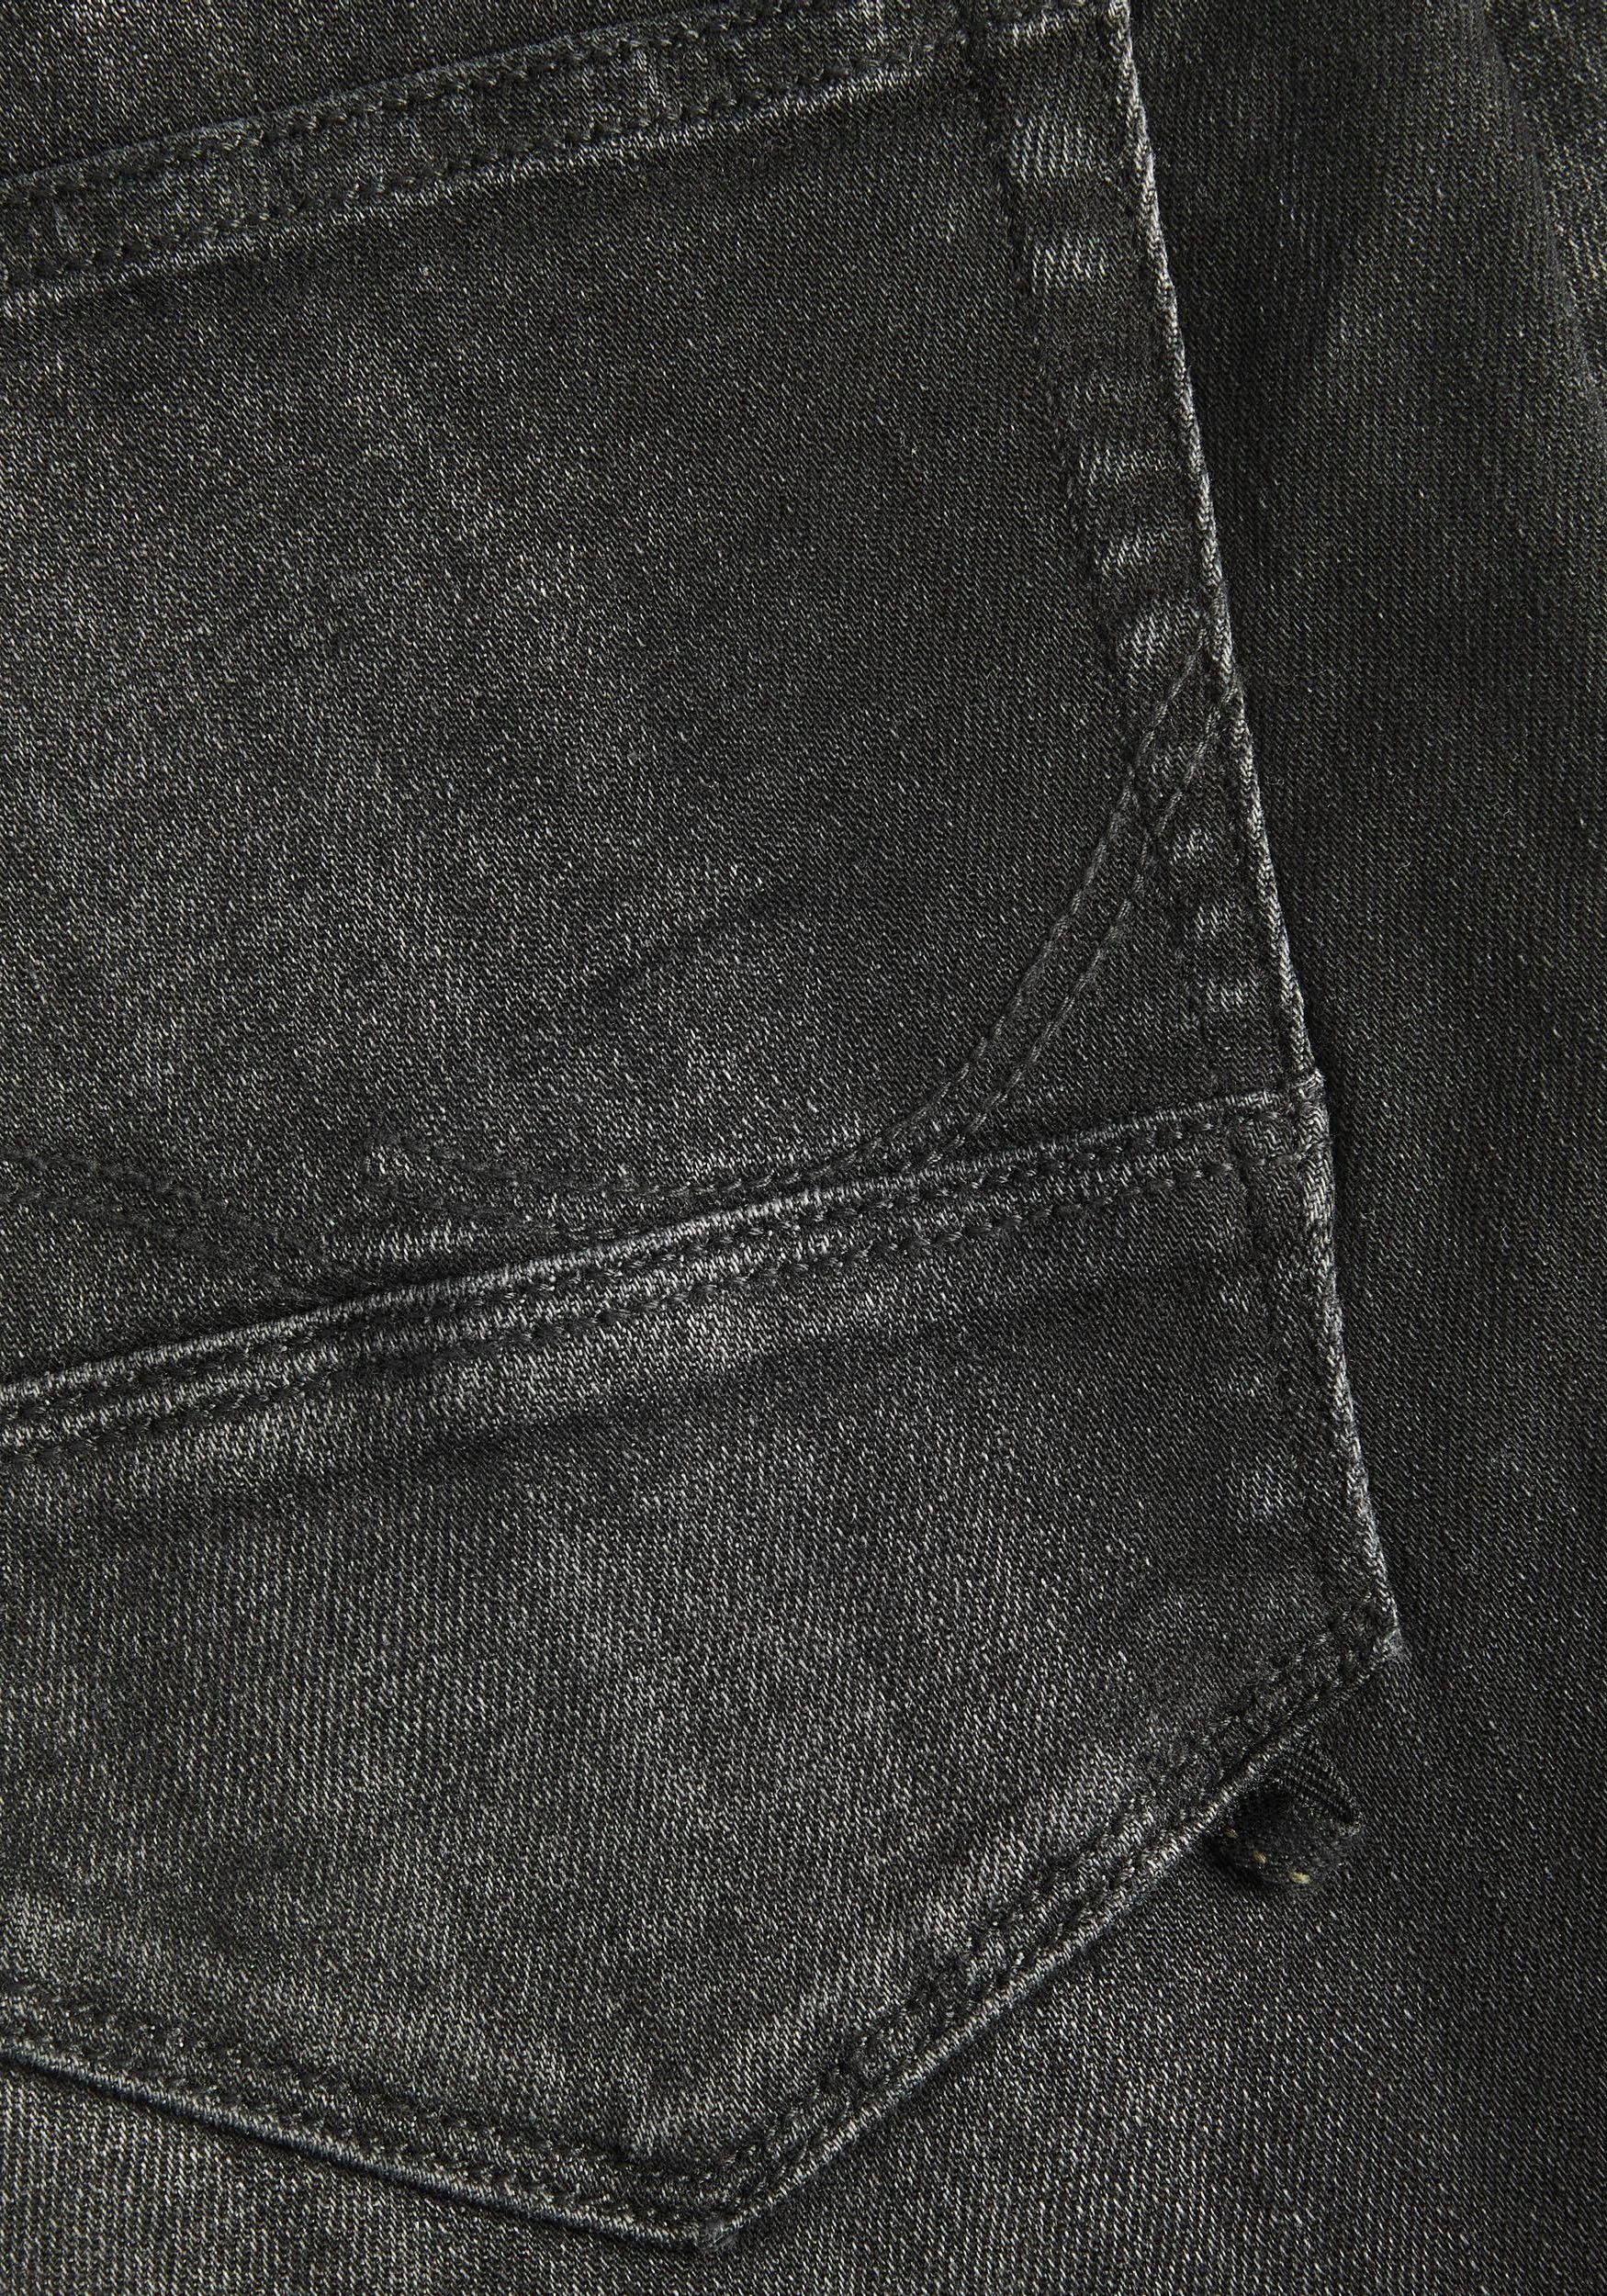 Glenn Jones & Jack black-denim Slim-fit-Jeans